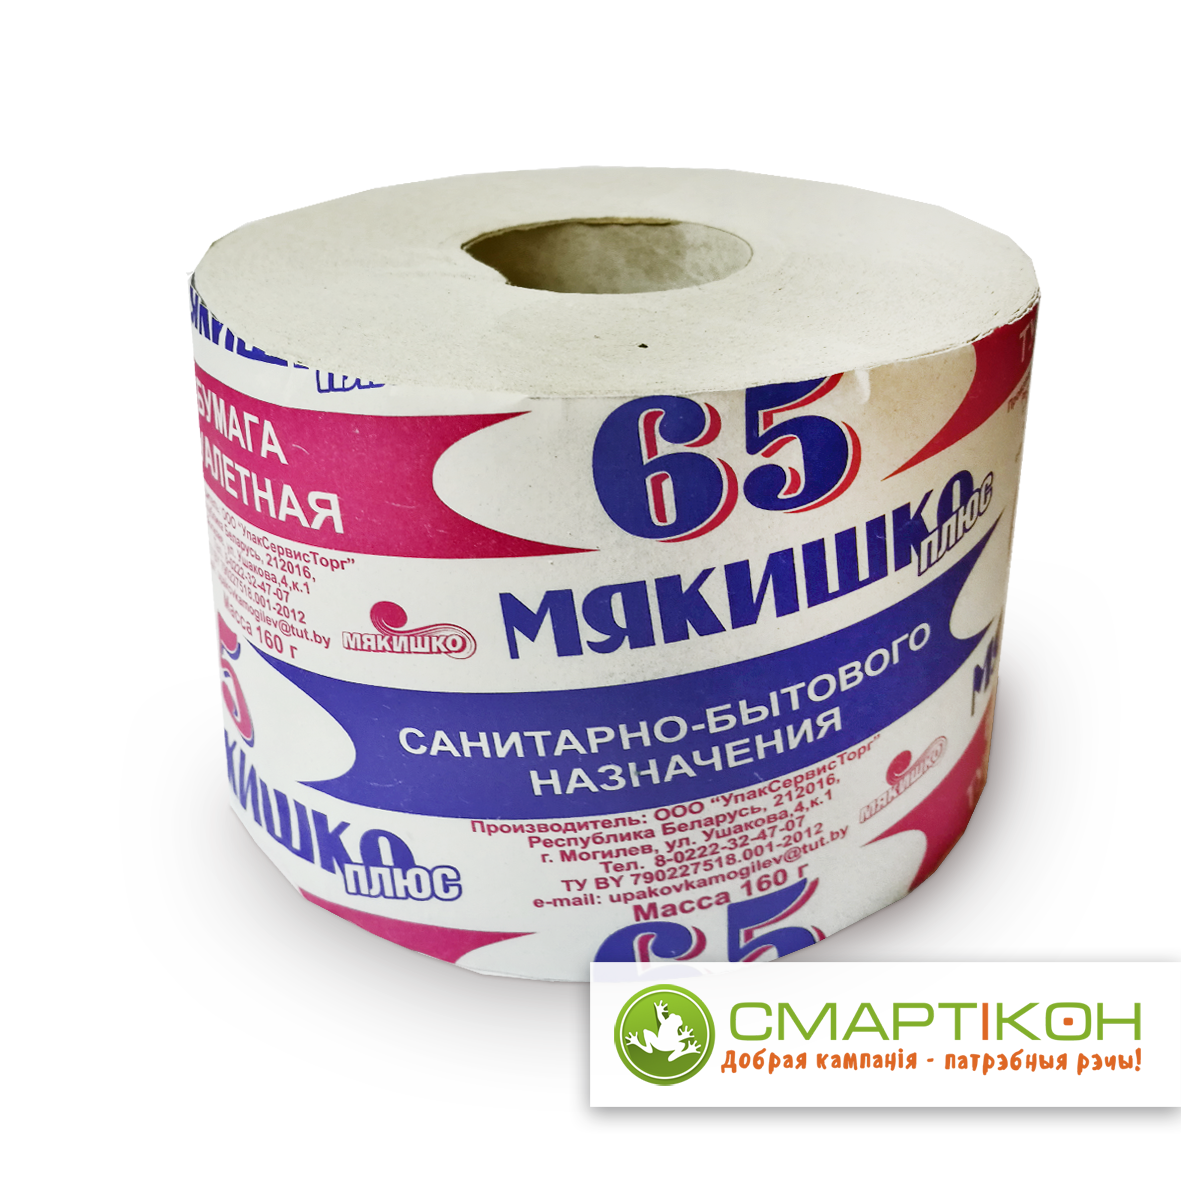 Бумага туалетная на втулке "Мякишко-плюс 65" РБ. Цена указана без НДС.